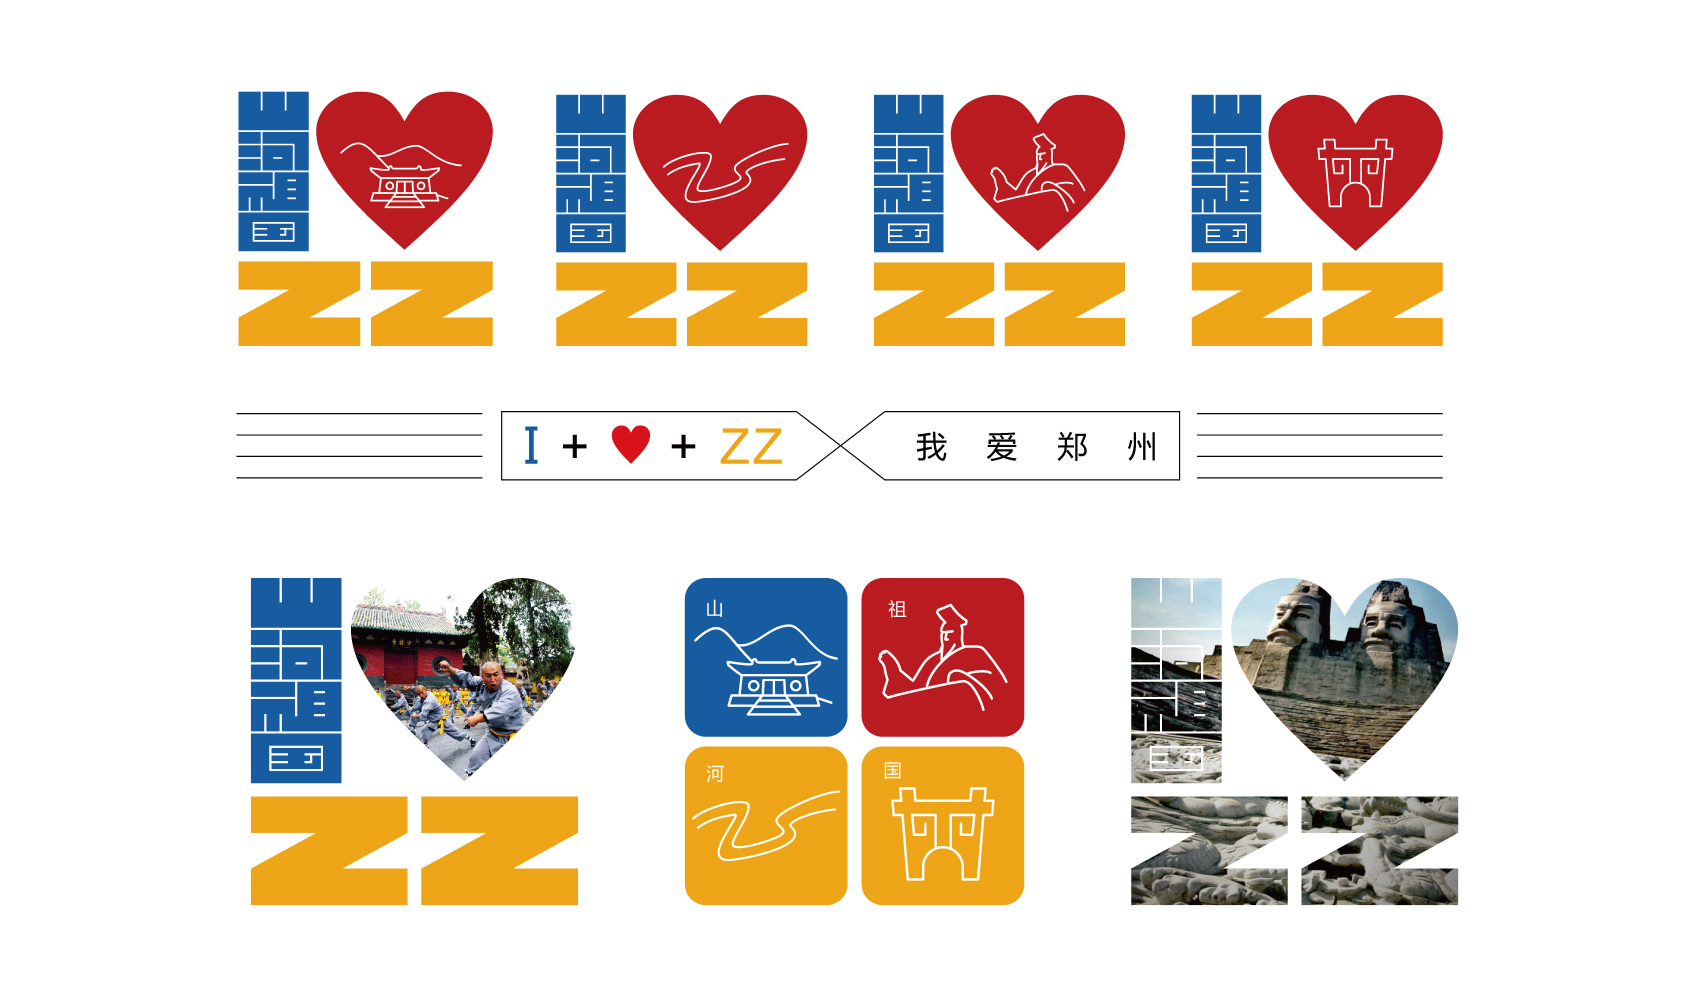 中国郑州标志设计